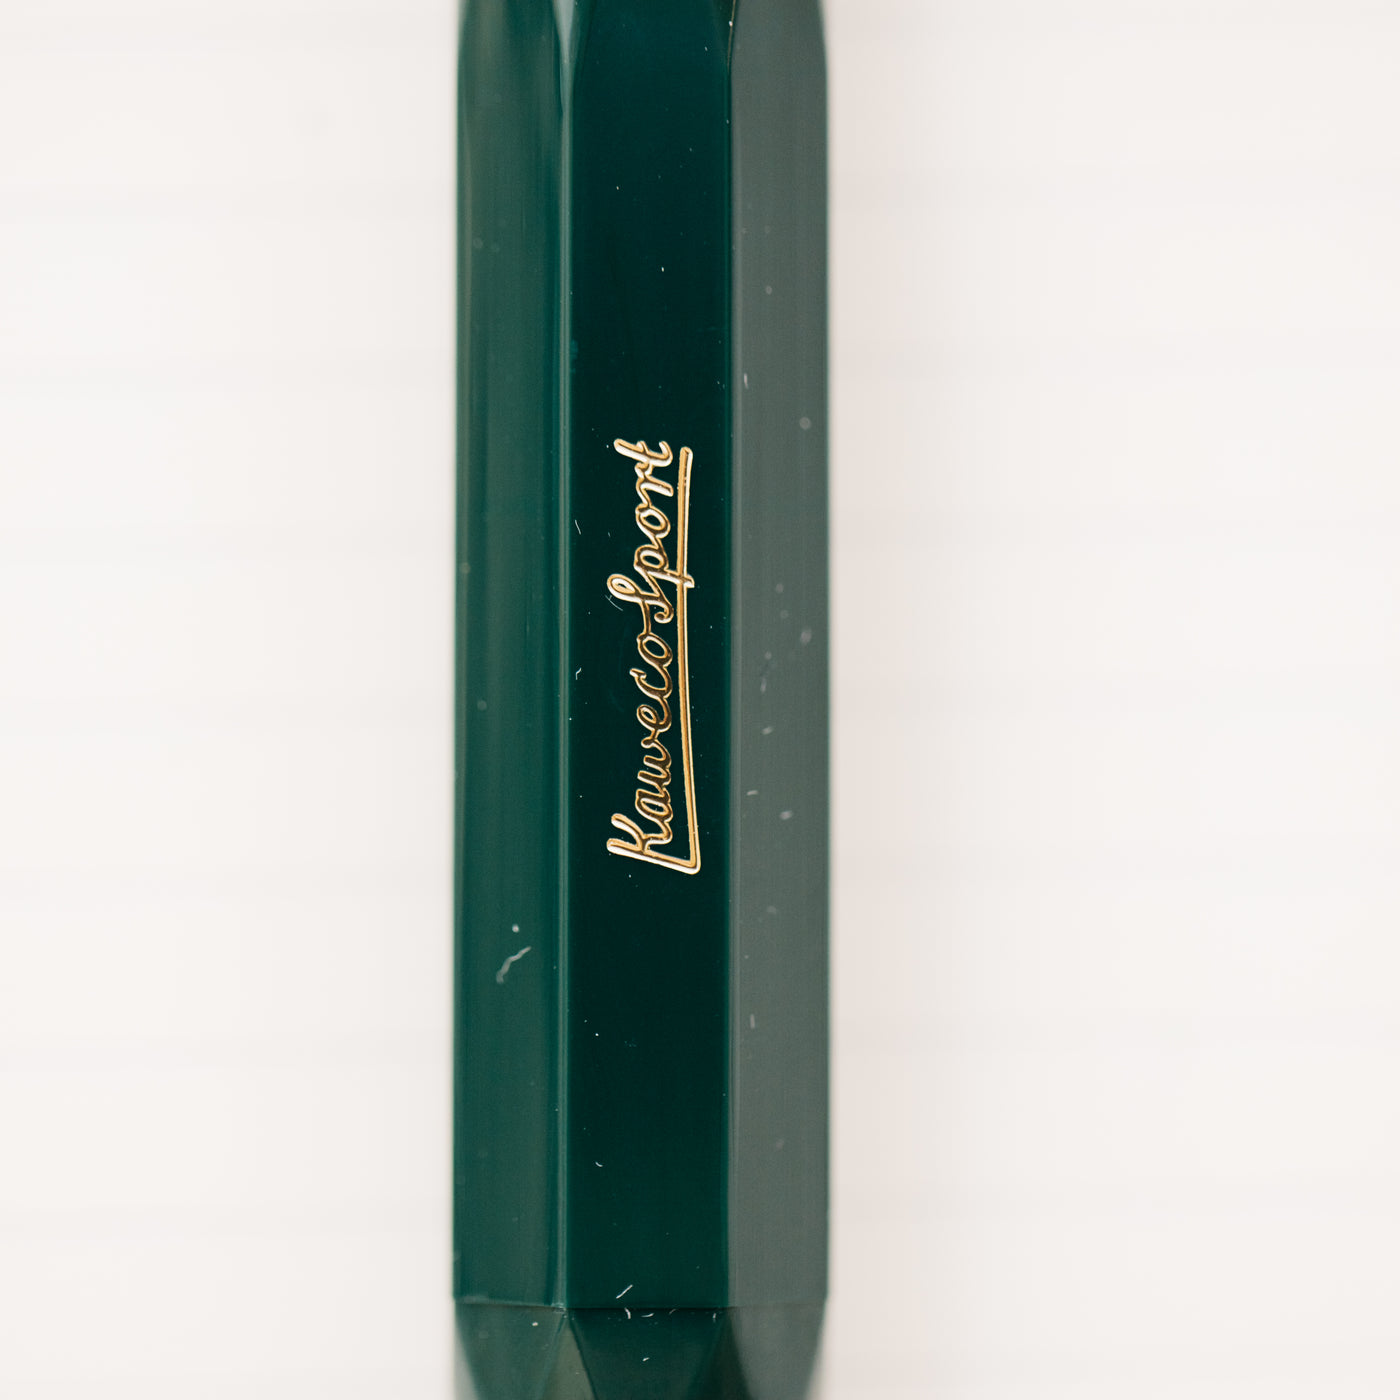 Kaweco Sport Classic Green Fountain Pen